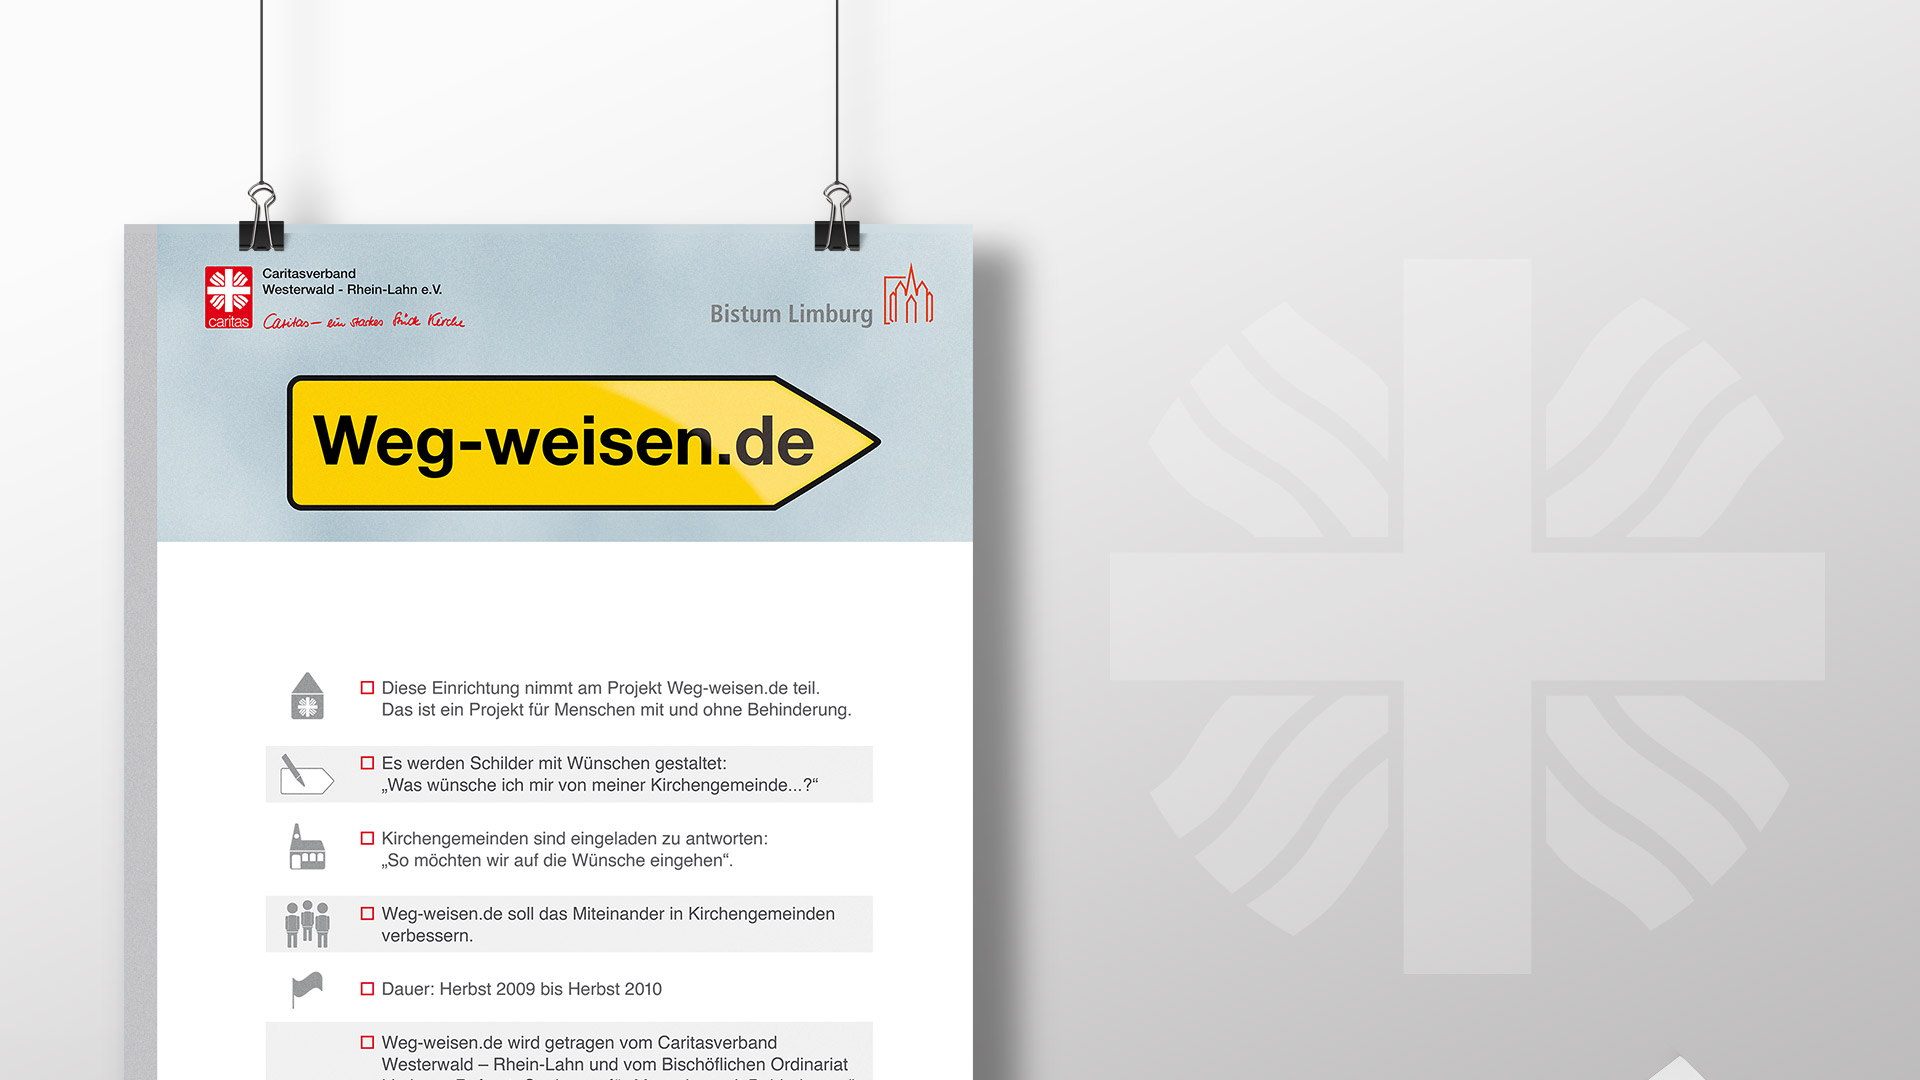 Caritas Werkstätten Westerwald-Rhein-Lahn – Corporate Design